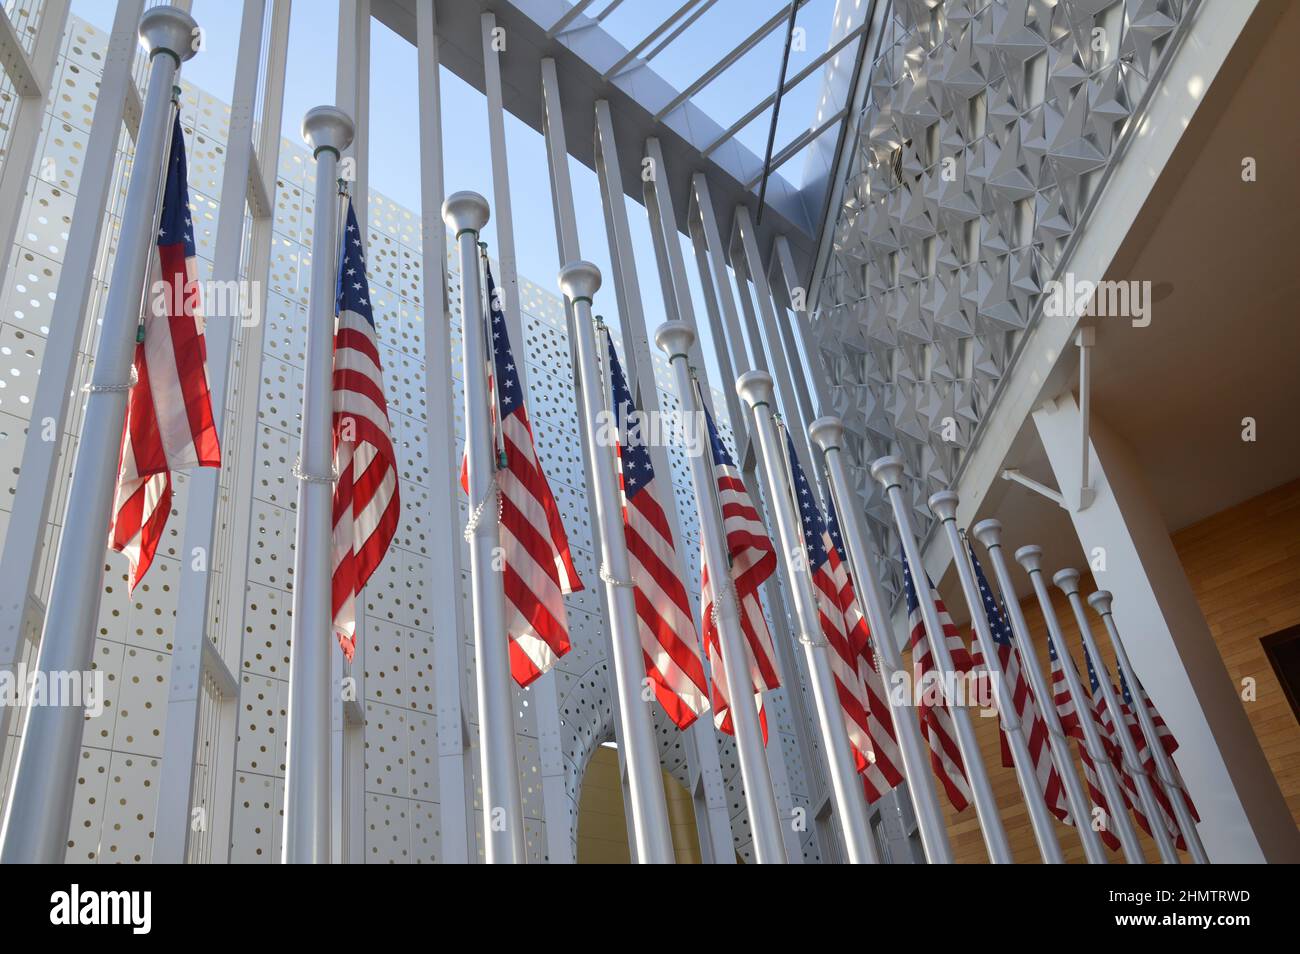 US-Flaggen schmücken den US-Pavillon auf der Expo 2020 Dubai, Vereinigte Arabische Emirate - 1. Februar 2022. Stockfoto